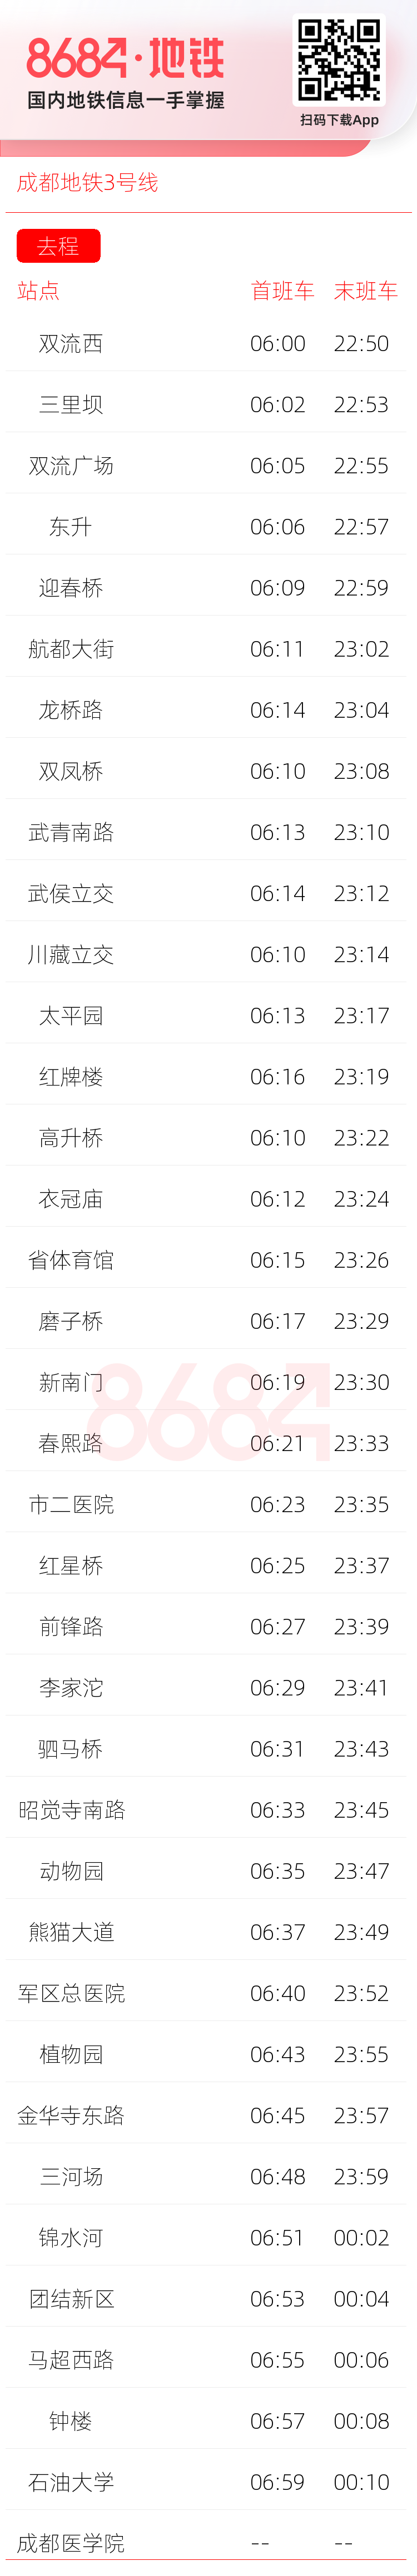 成都地铁3号线运营时间表